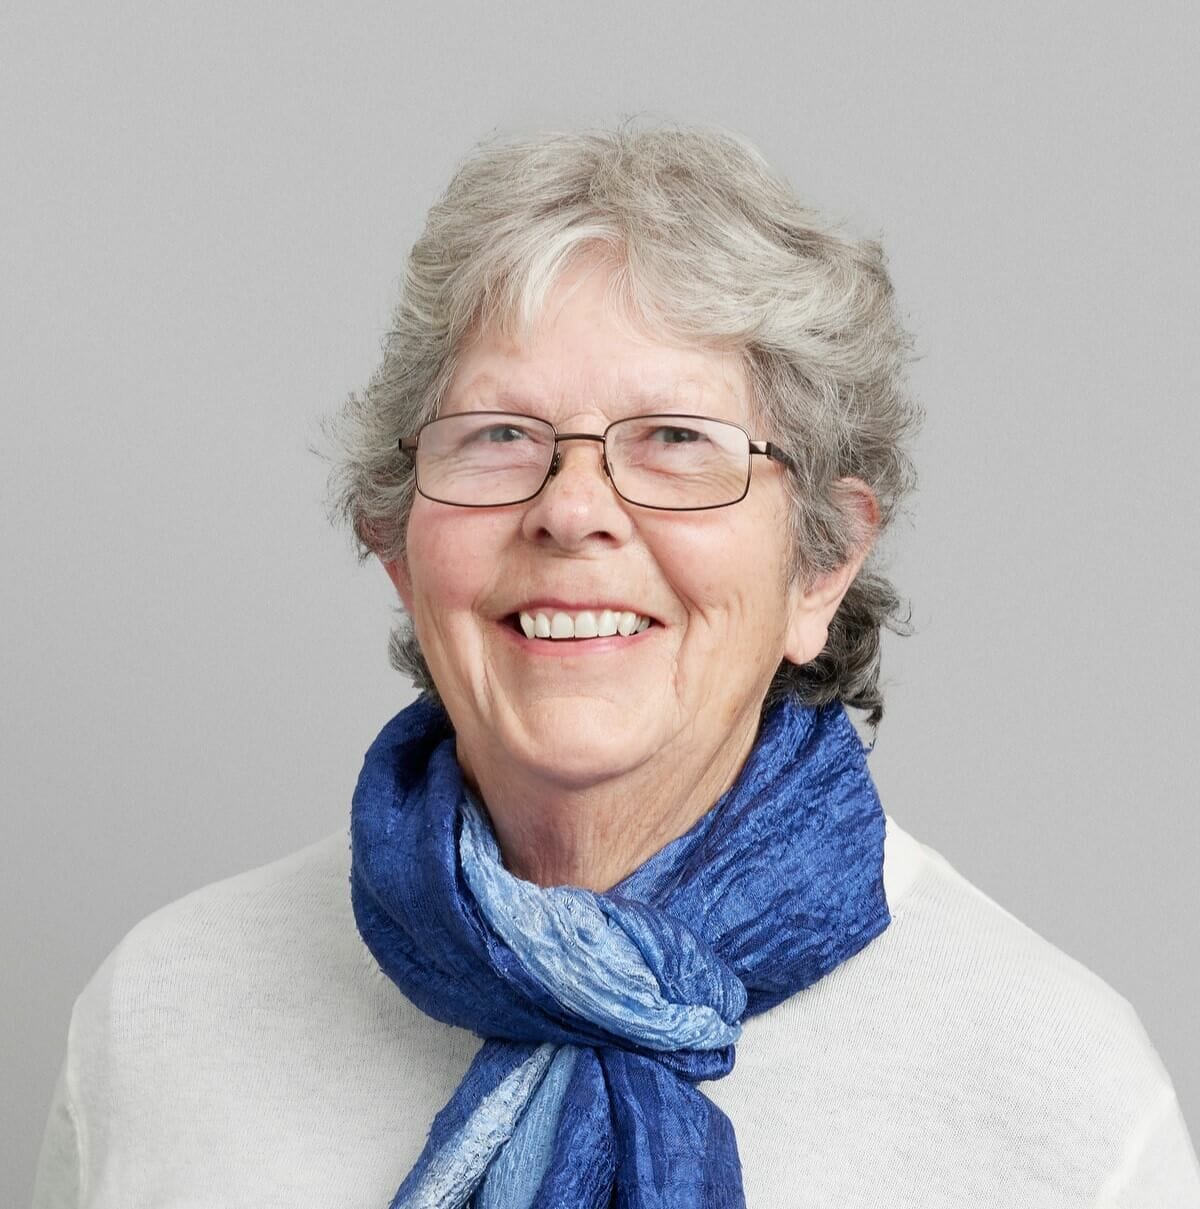 Board Member Mary Kepert